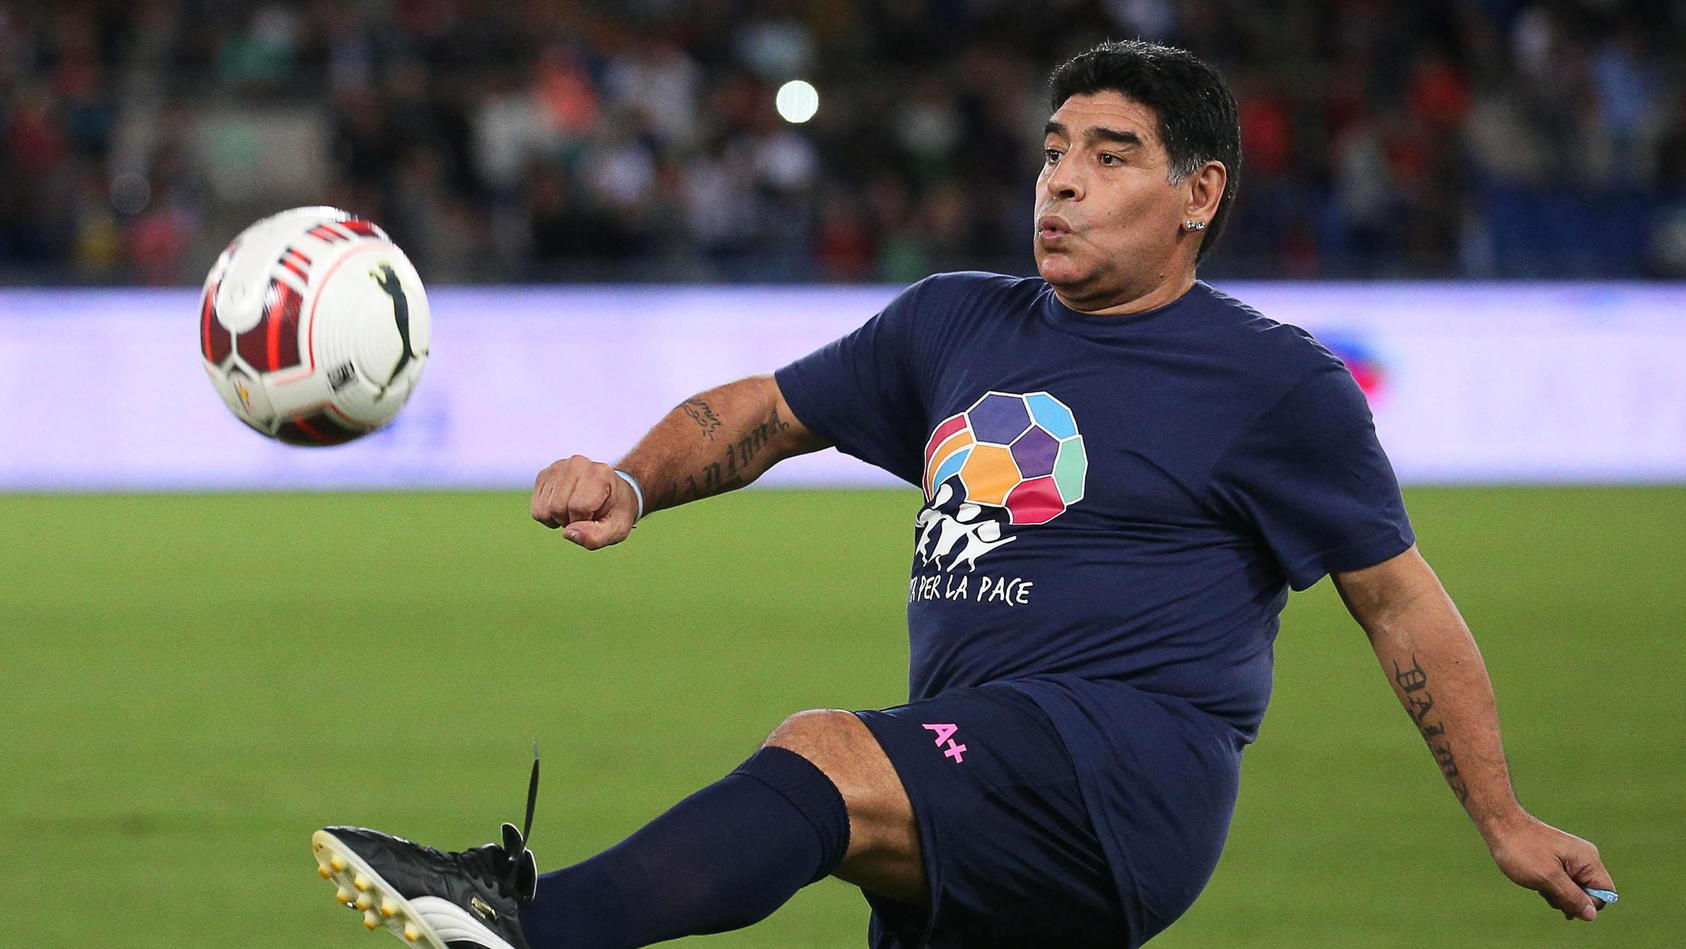 Diego Maradona Wird 60 Ein Leben Zwischen Ball Lust Und Leiden